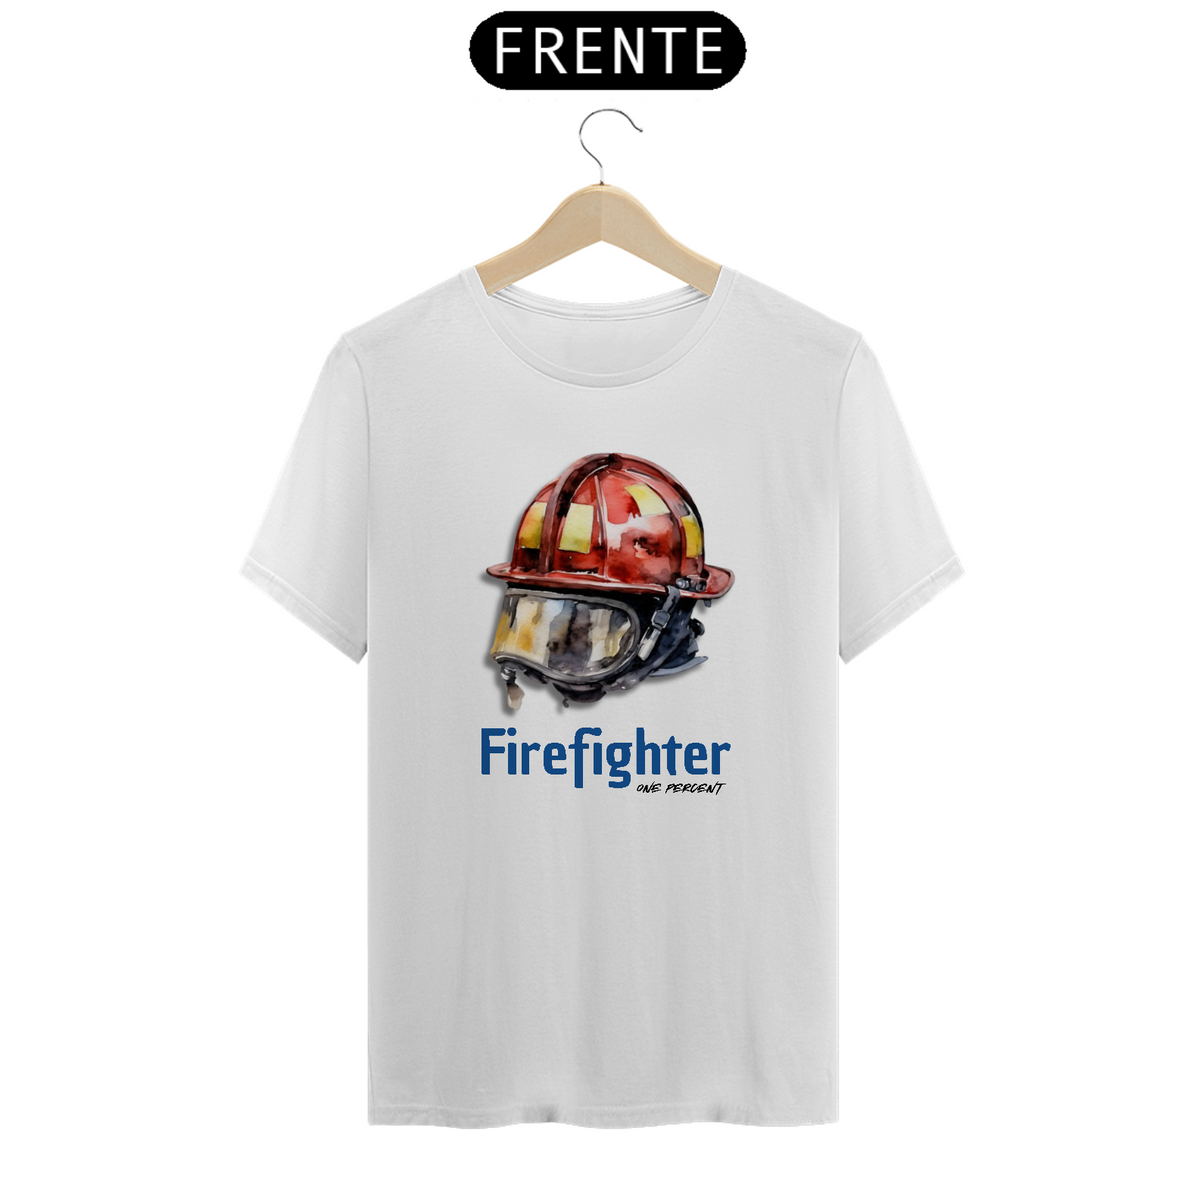 Nome do produto: Fire fighter